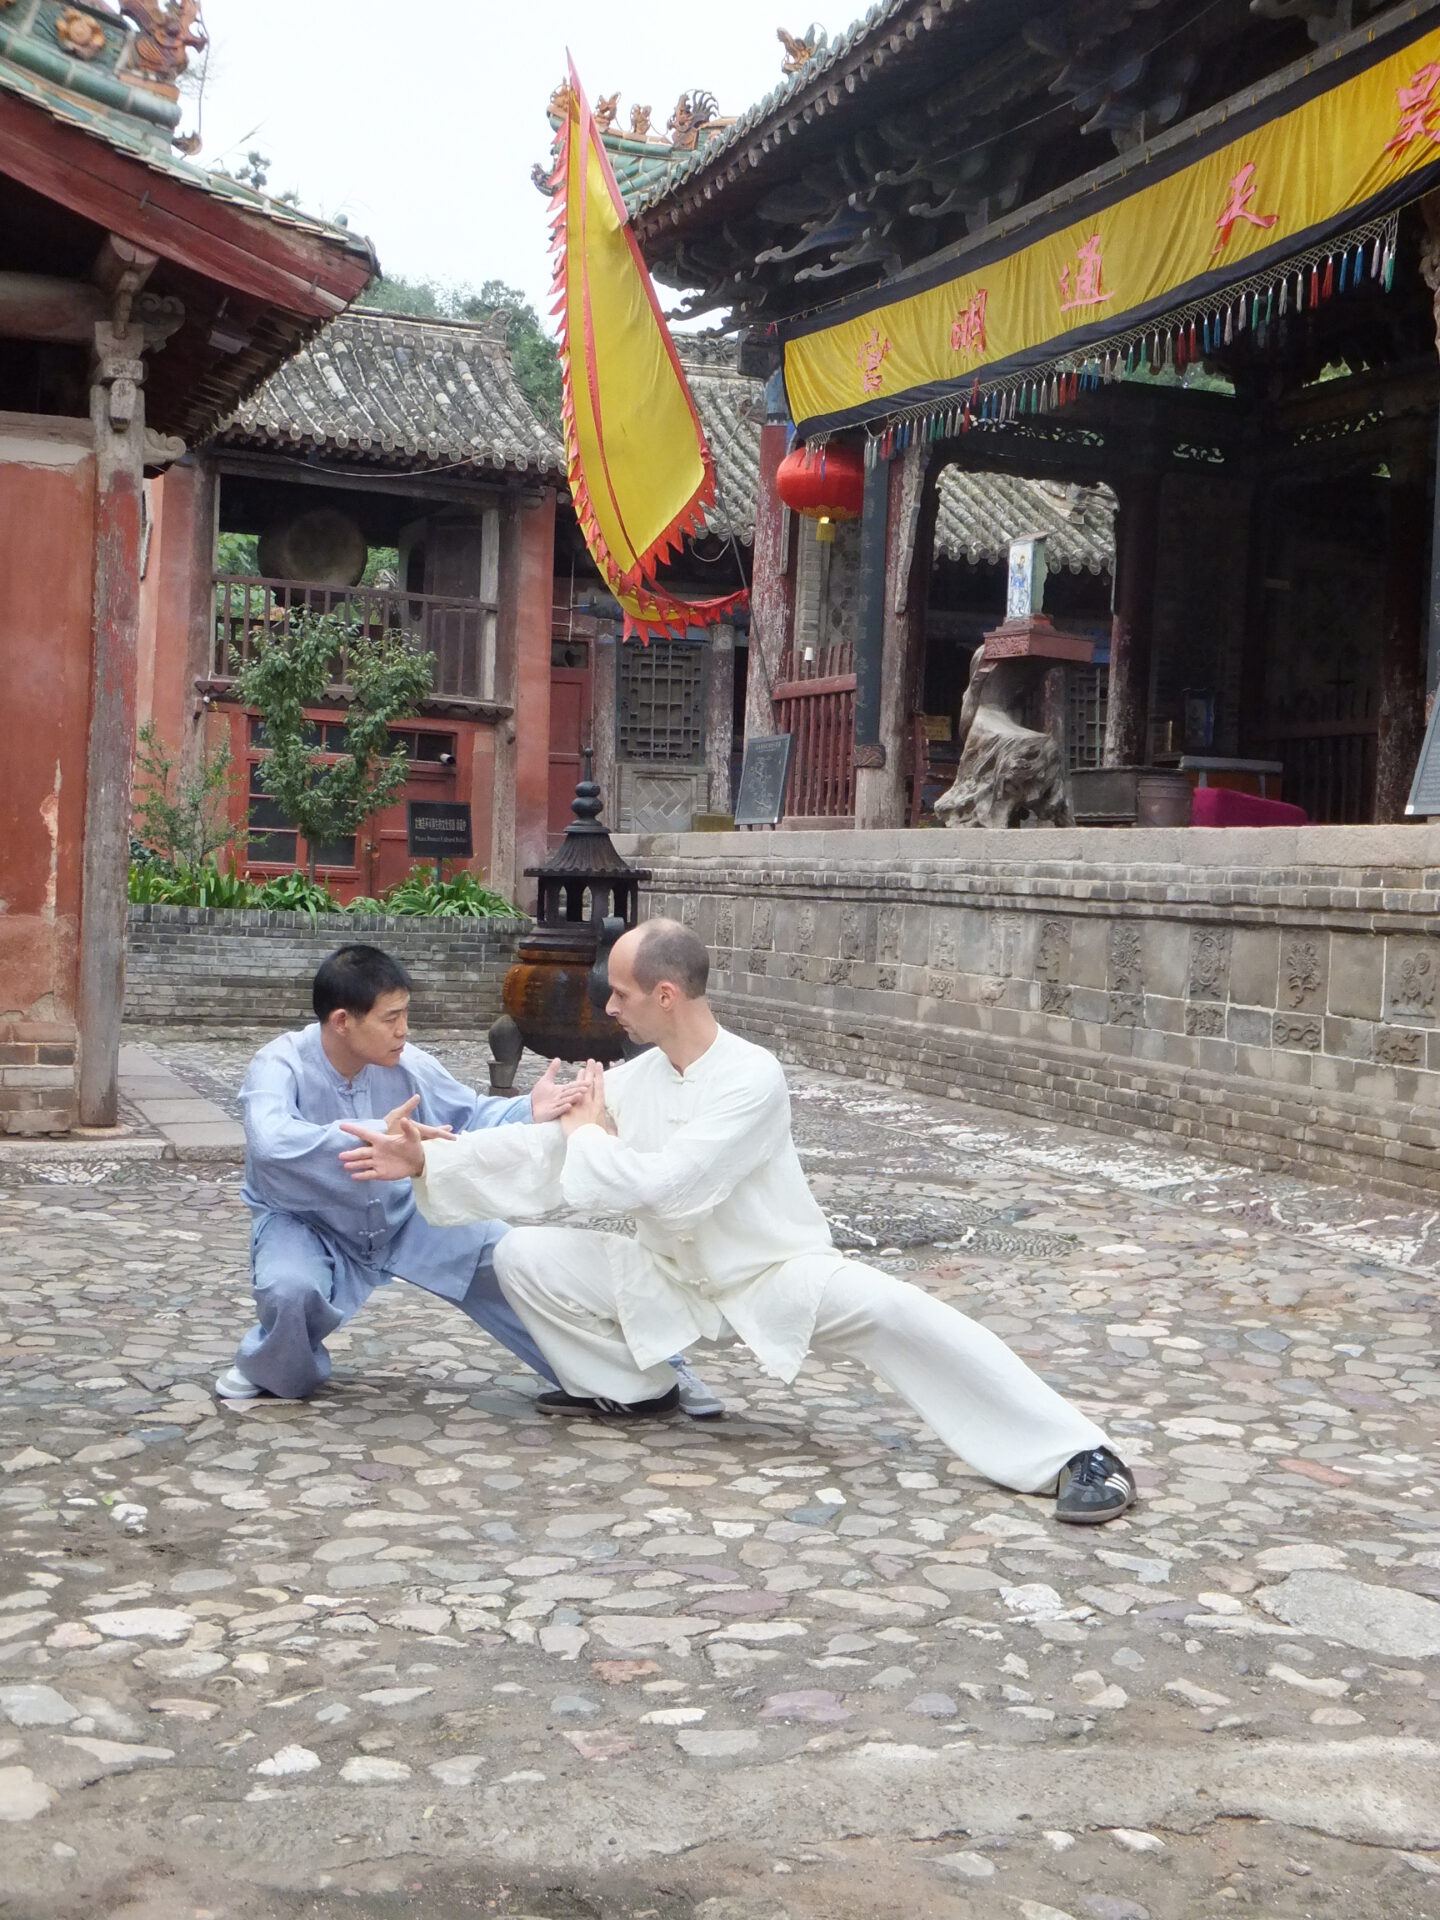 Training in China - Tuishou Training mit Großmeister Shen Xijing im Kloster der Jadequelle